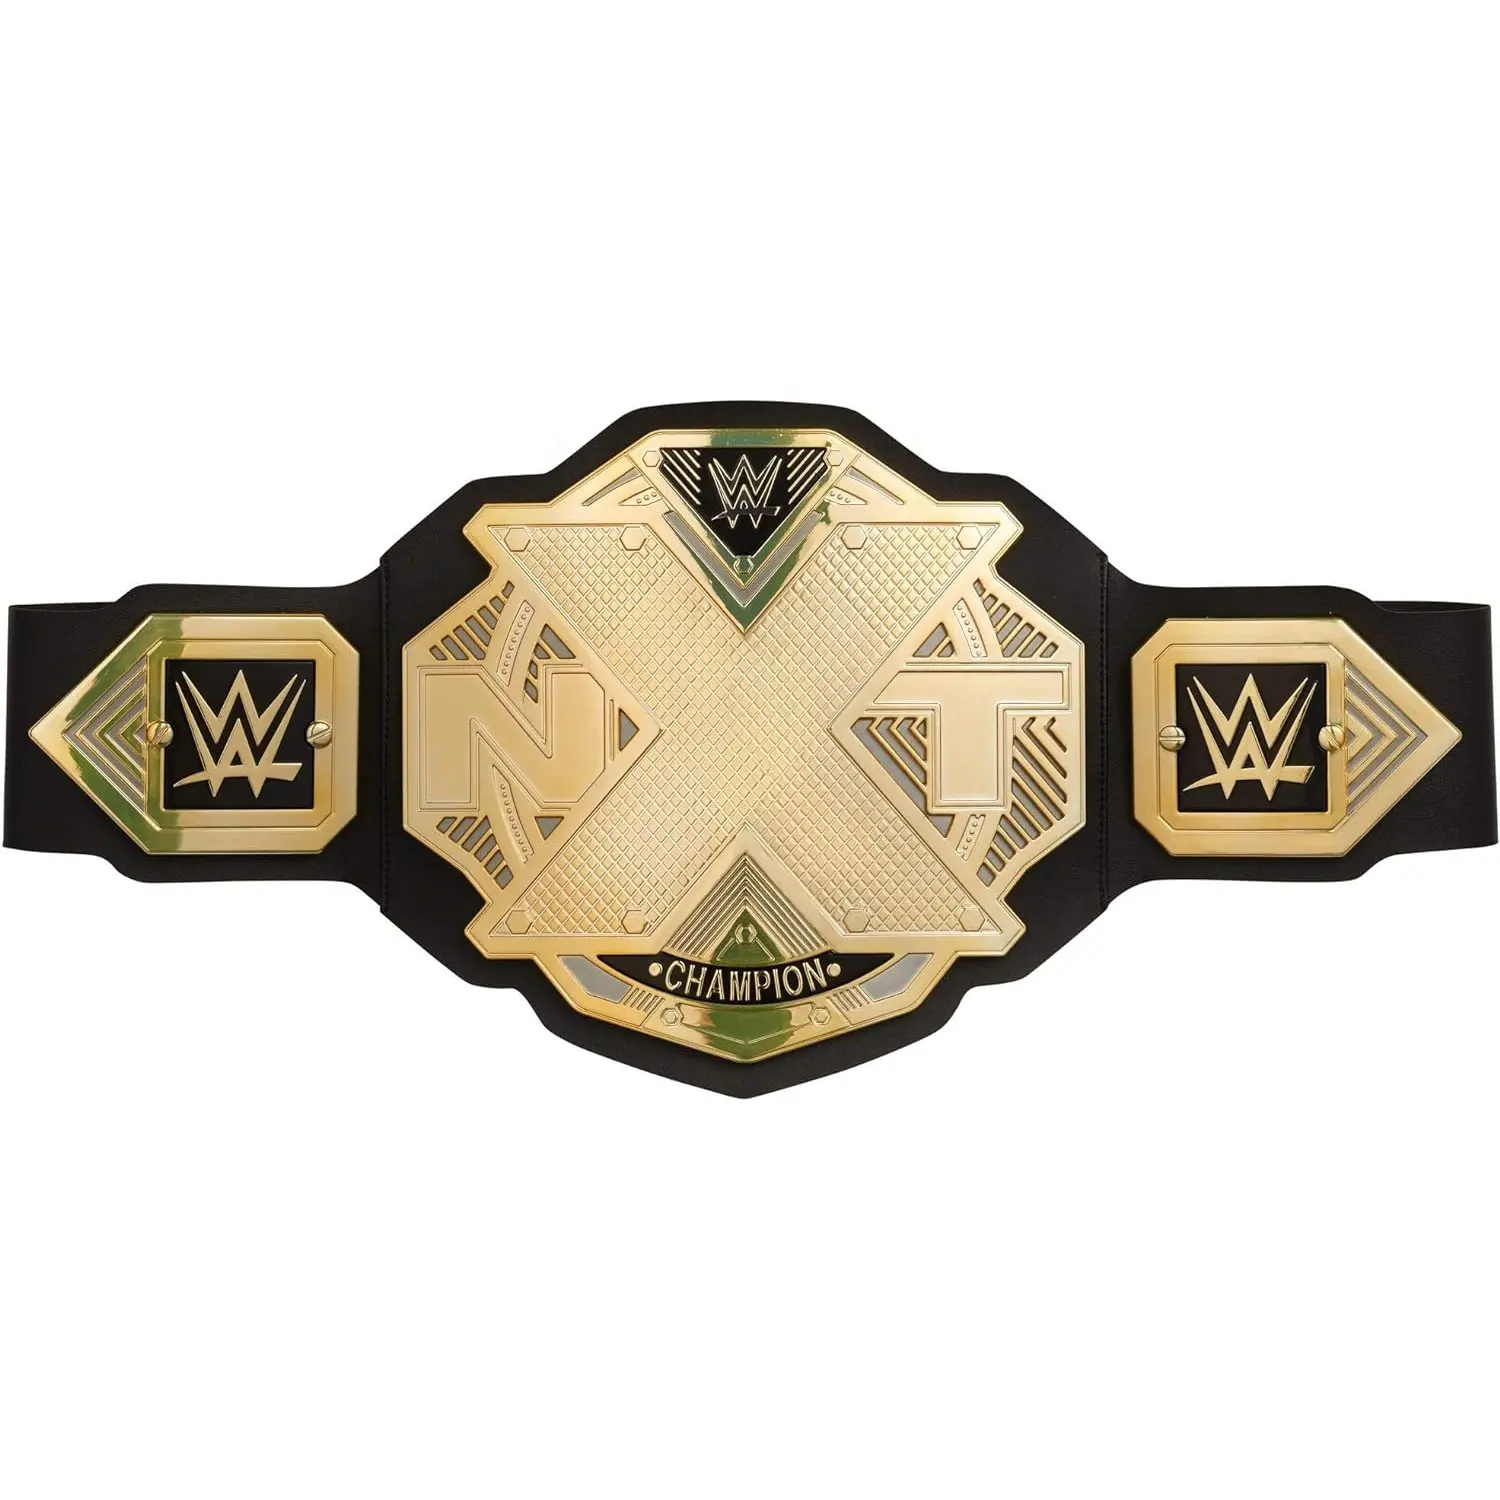 NXT championcustom mới được thực hiện tốt nhất trong các đai vô địch chuyên nghiệp thế giới như Đai đấm bốc, Đai Đấu Vật, Đai Karate